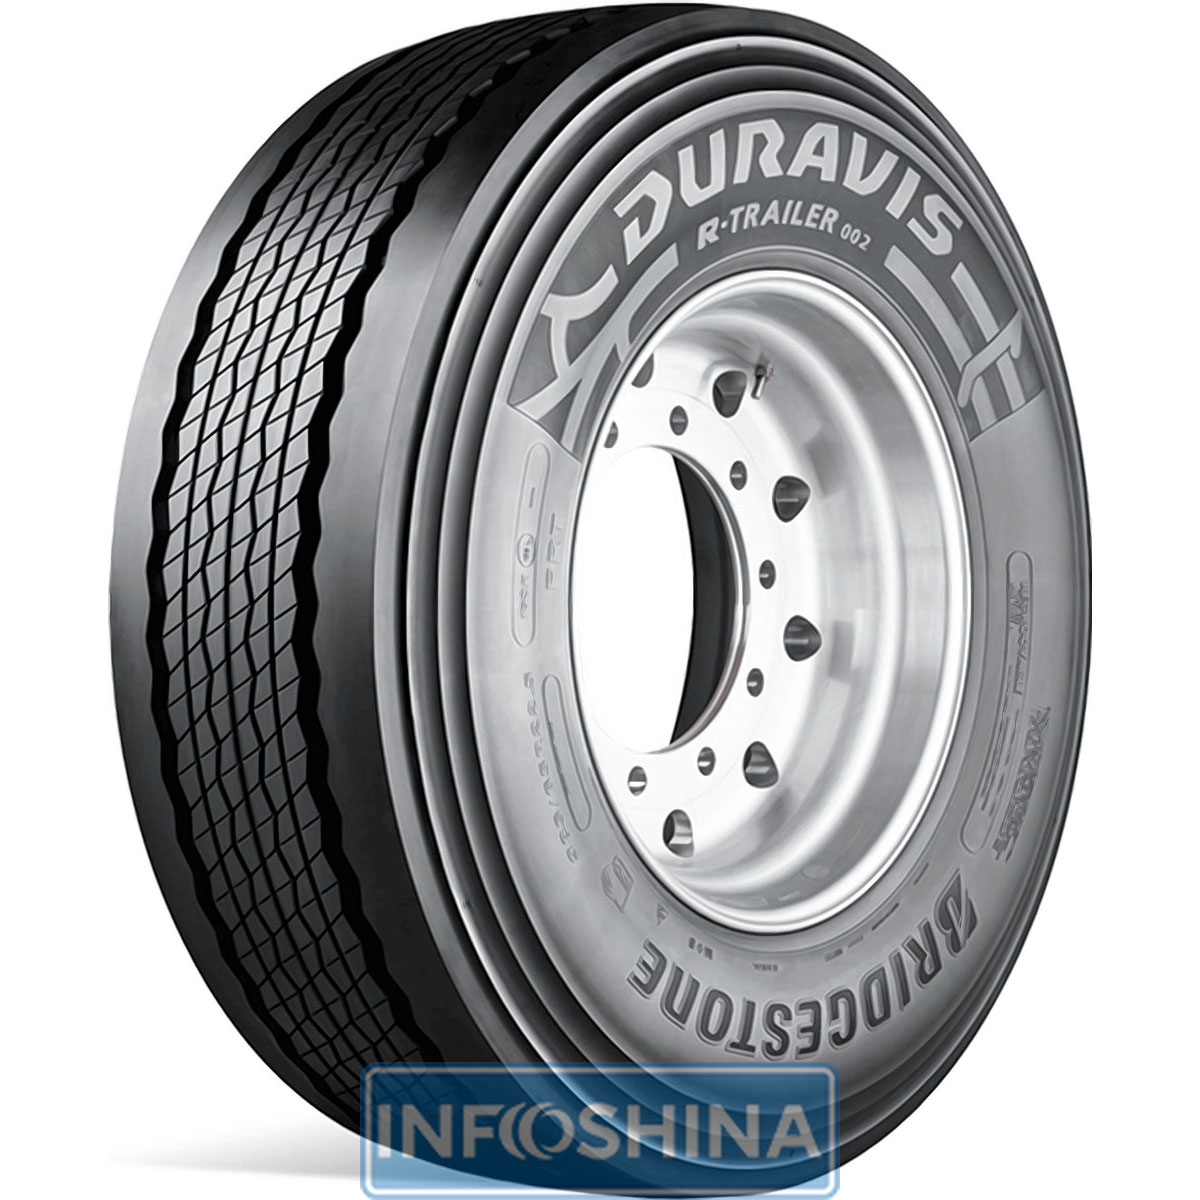 Купить шины Bridgestone Duravis R-Trailer 002 (прицепная ось) 385/55 R22.5 160K (158L)